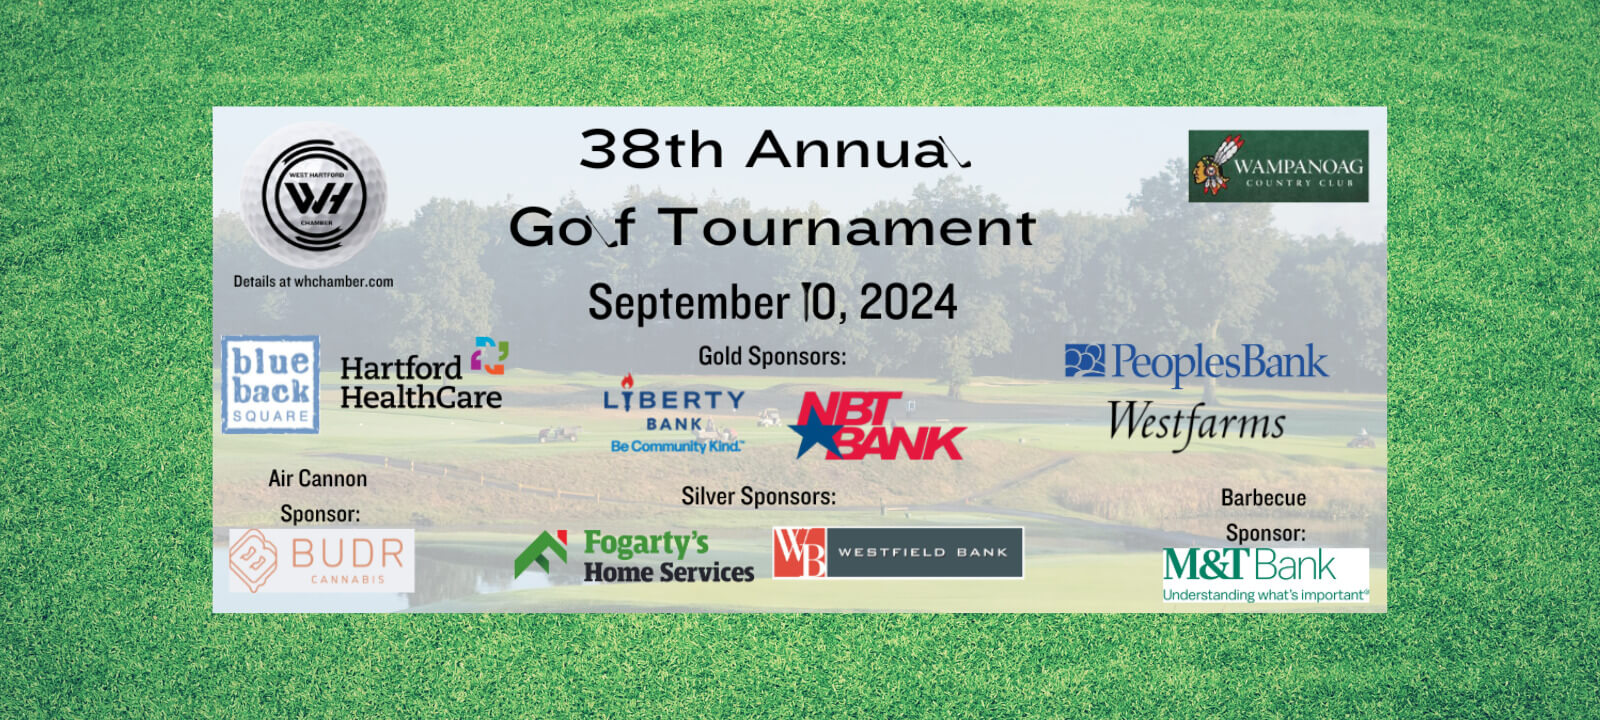 West Hartford Chamber Golf Tournament 2024 logo on green grass